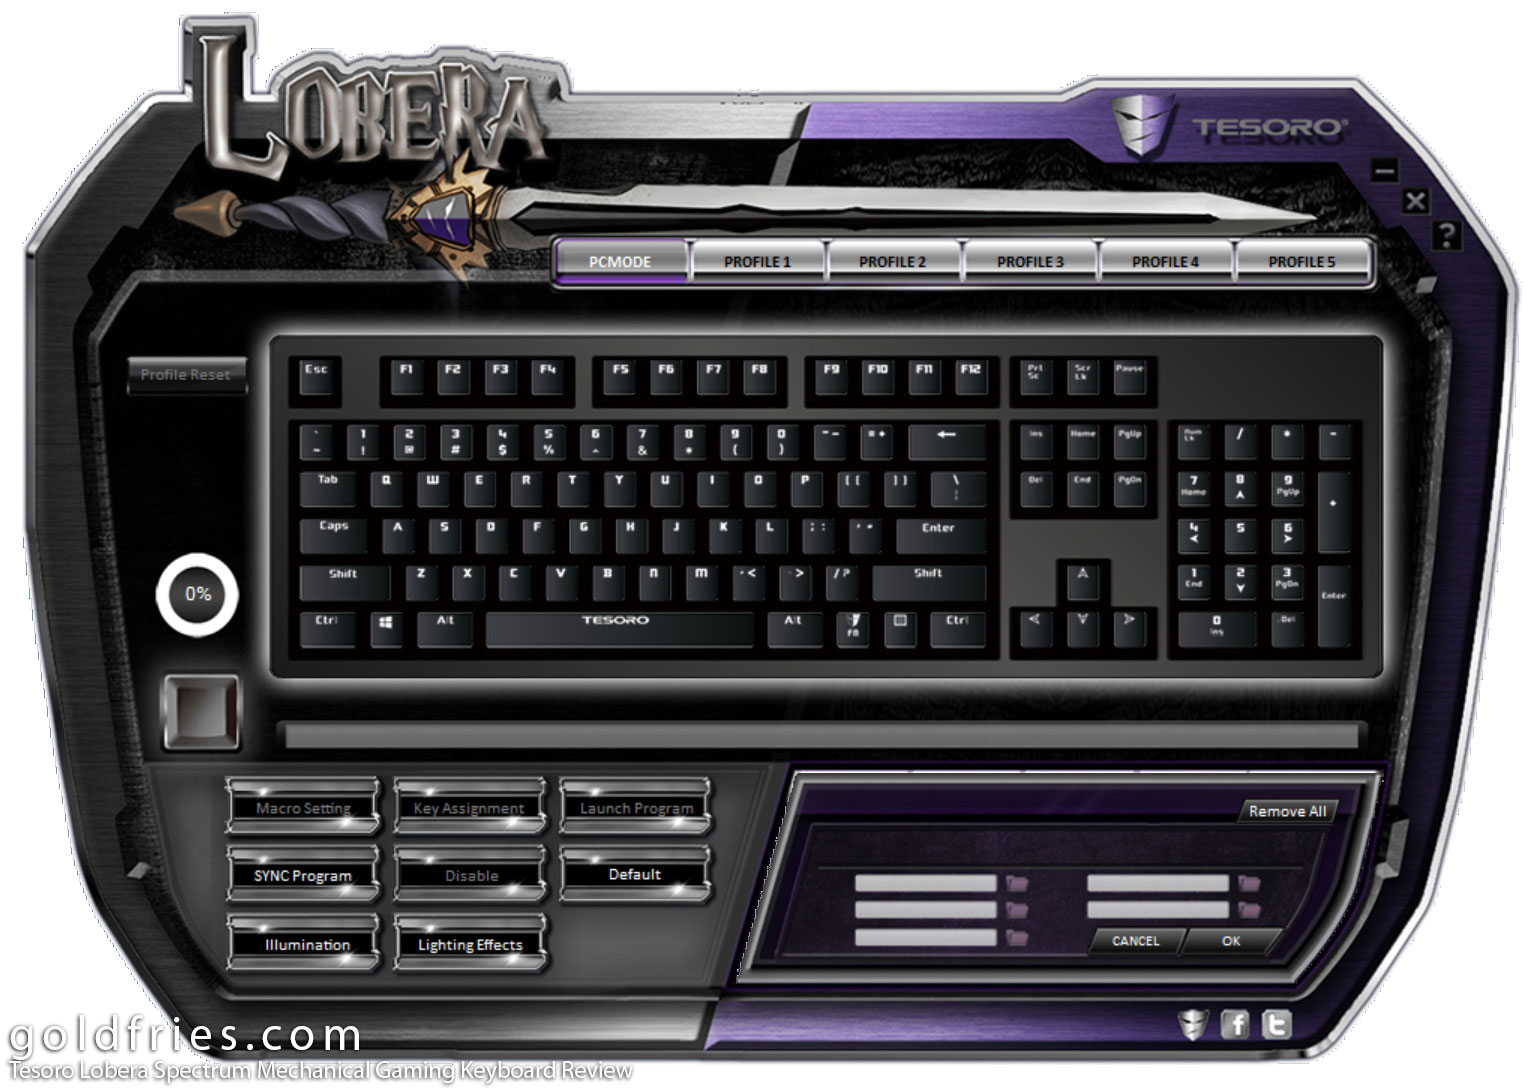 Tesoro Lobera Spectrum Mechanical Gaming Keyboard Review